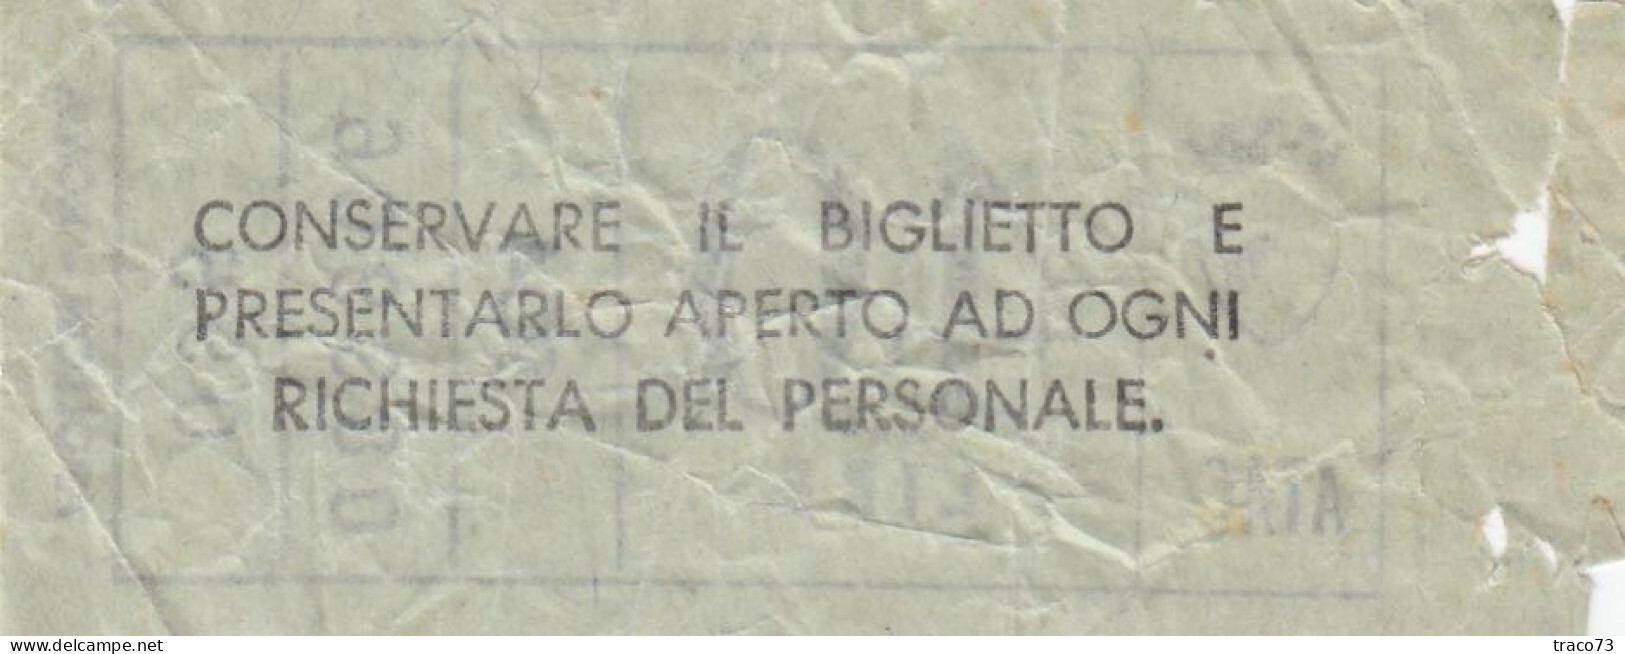 ATAC - ROMA  _ Anni '50-'60 /  Ticket  _ Biglietto Da Lire 40 - Europe